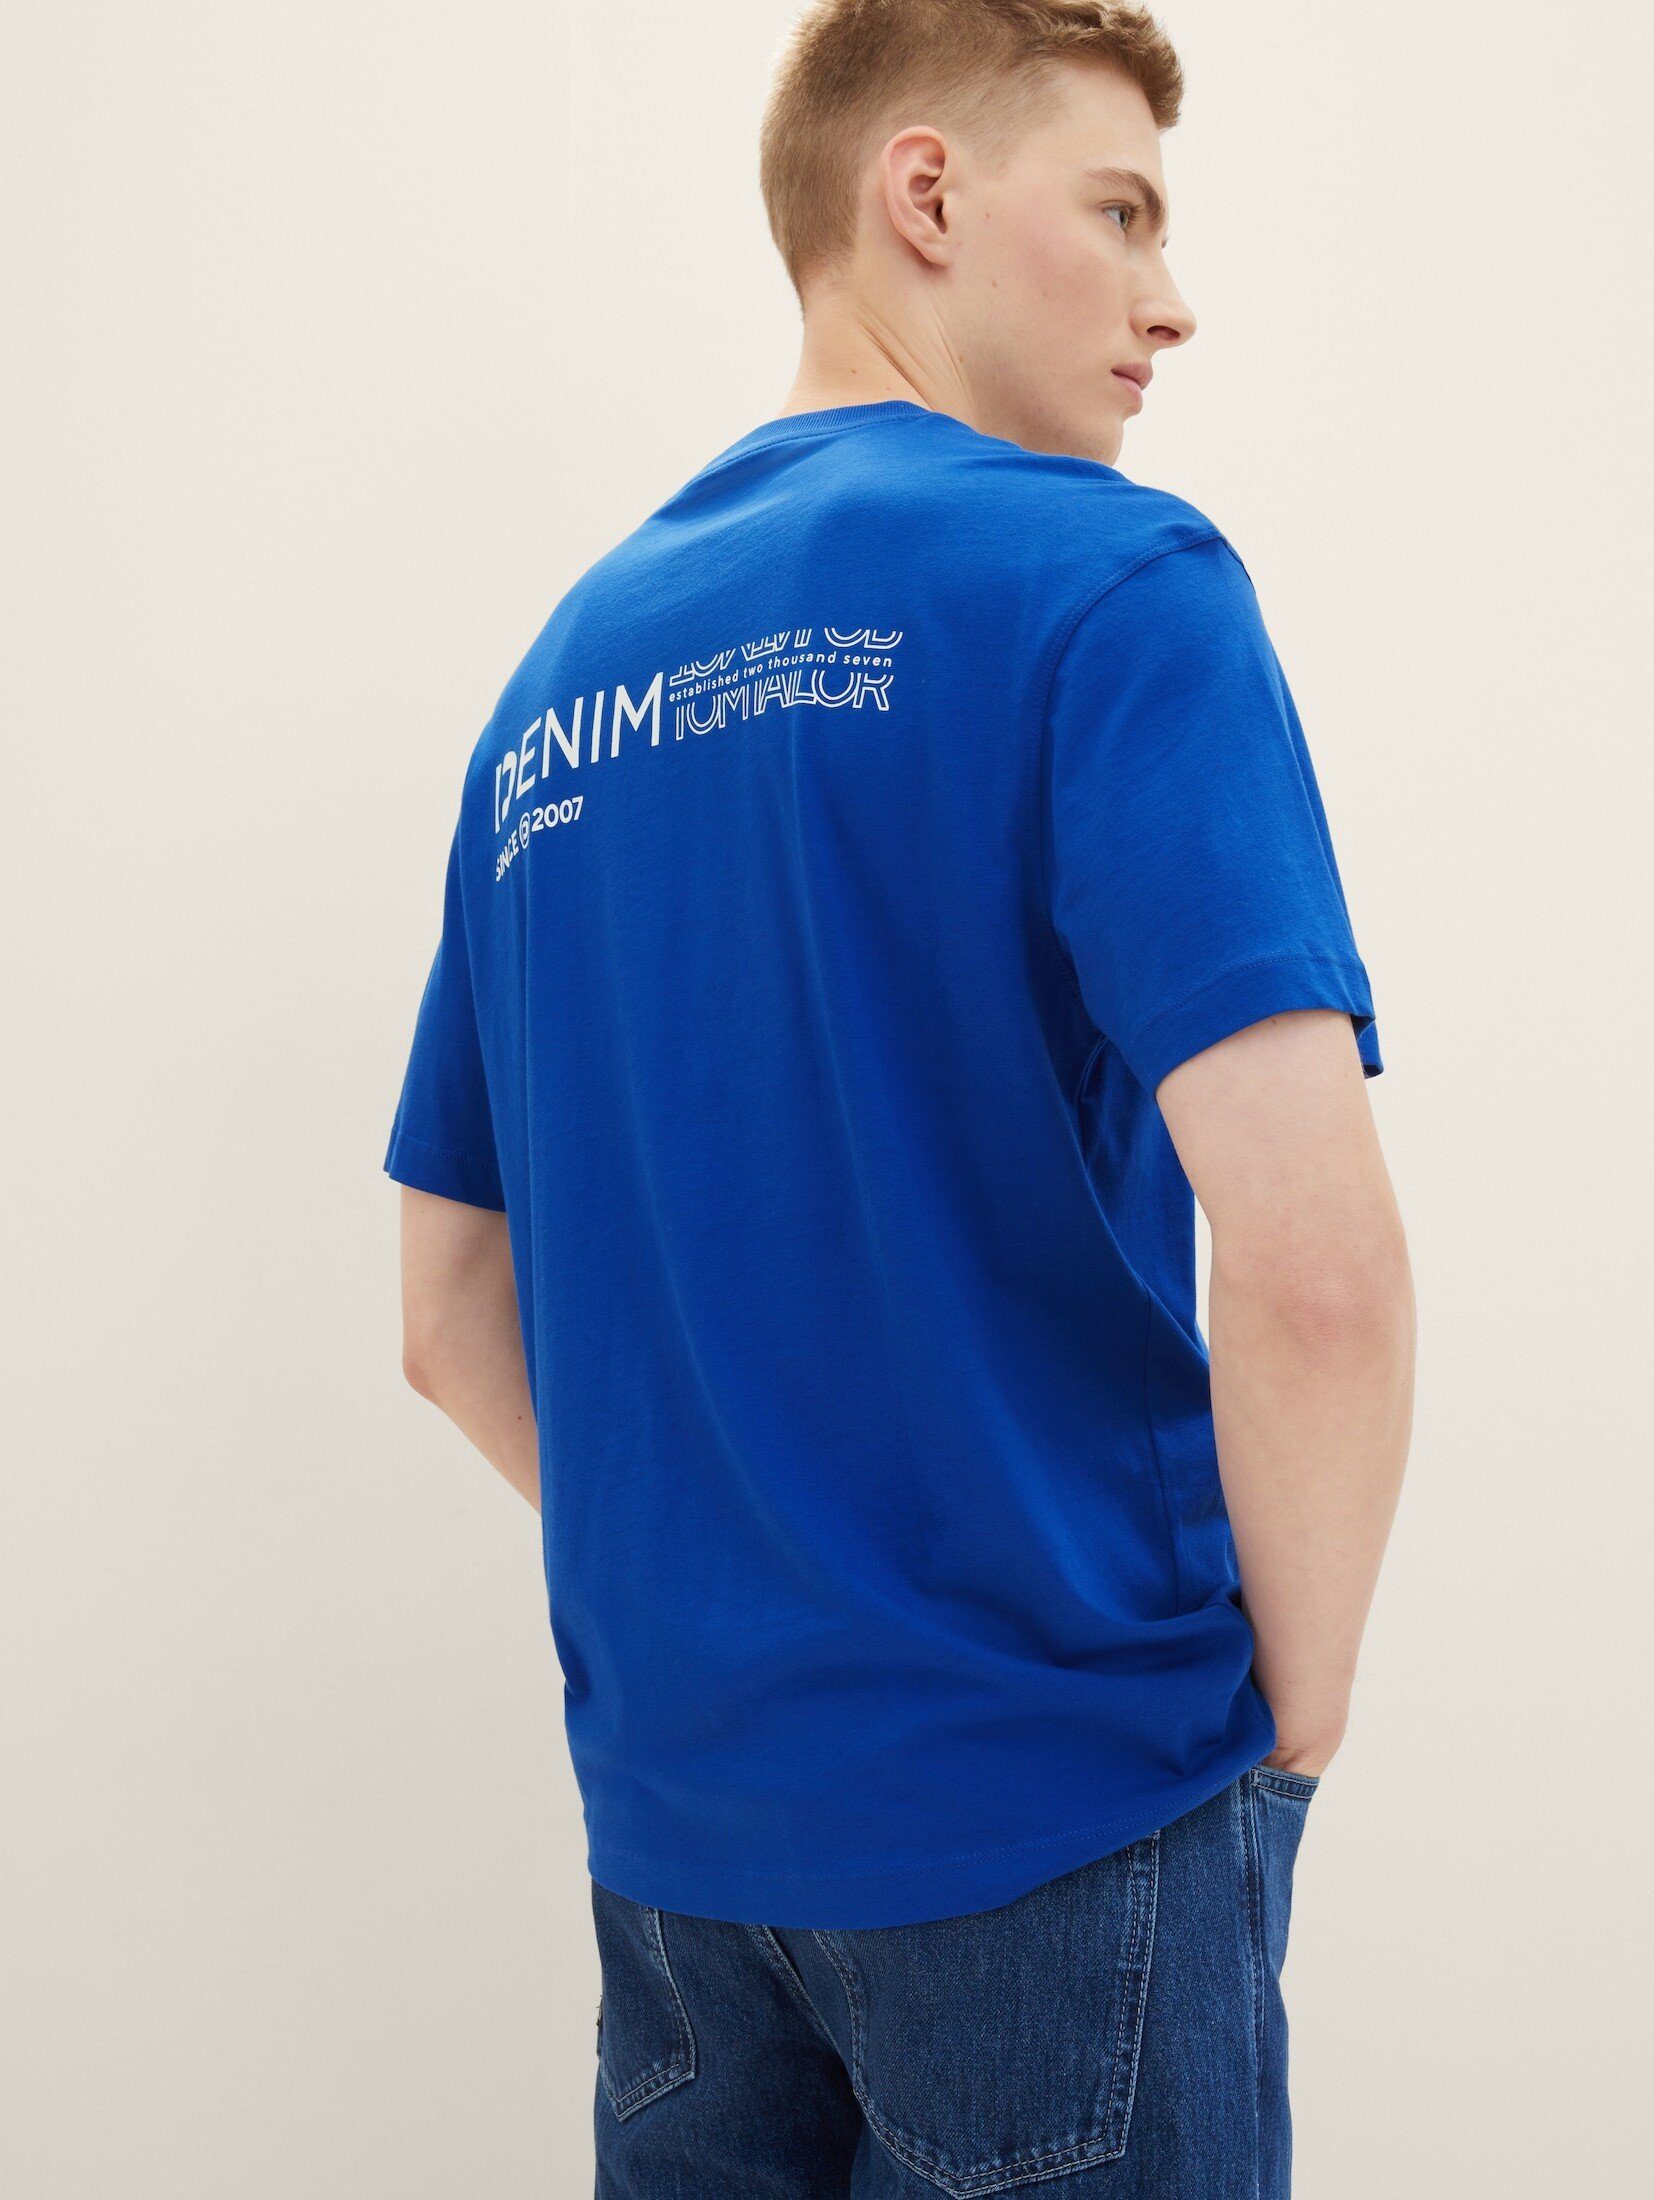 TOM TAILOR Denim T-Shirt T-Shirt royal mit Bio-Baumwolle blue shiny